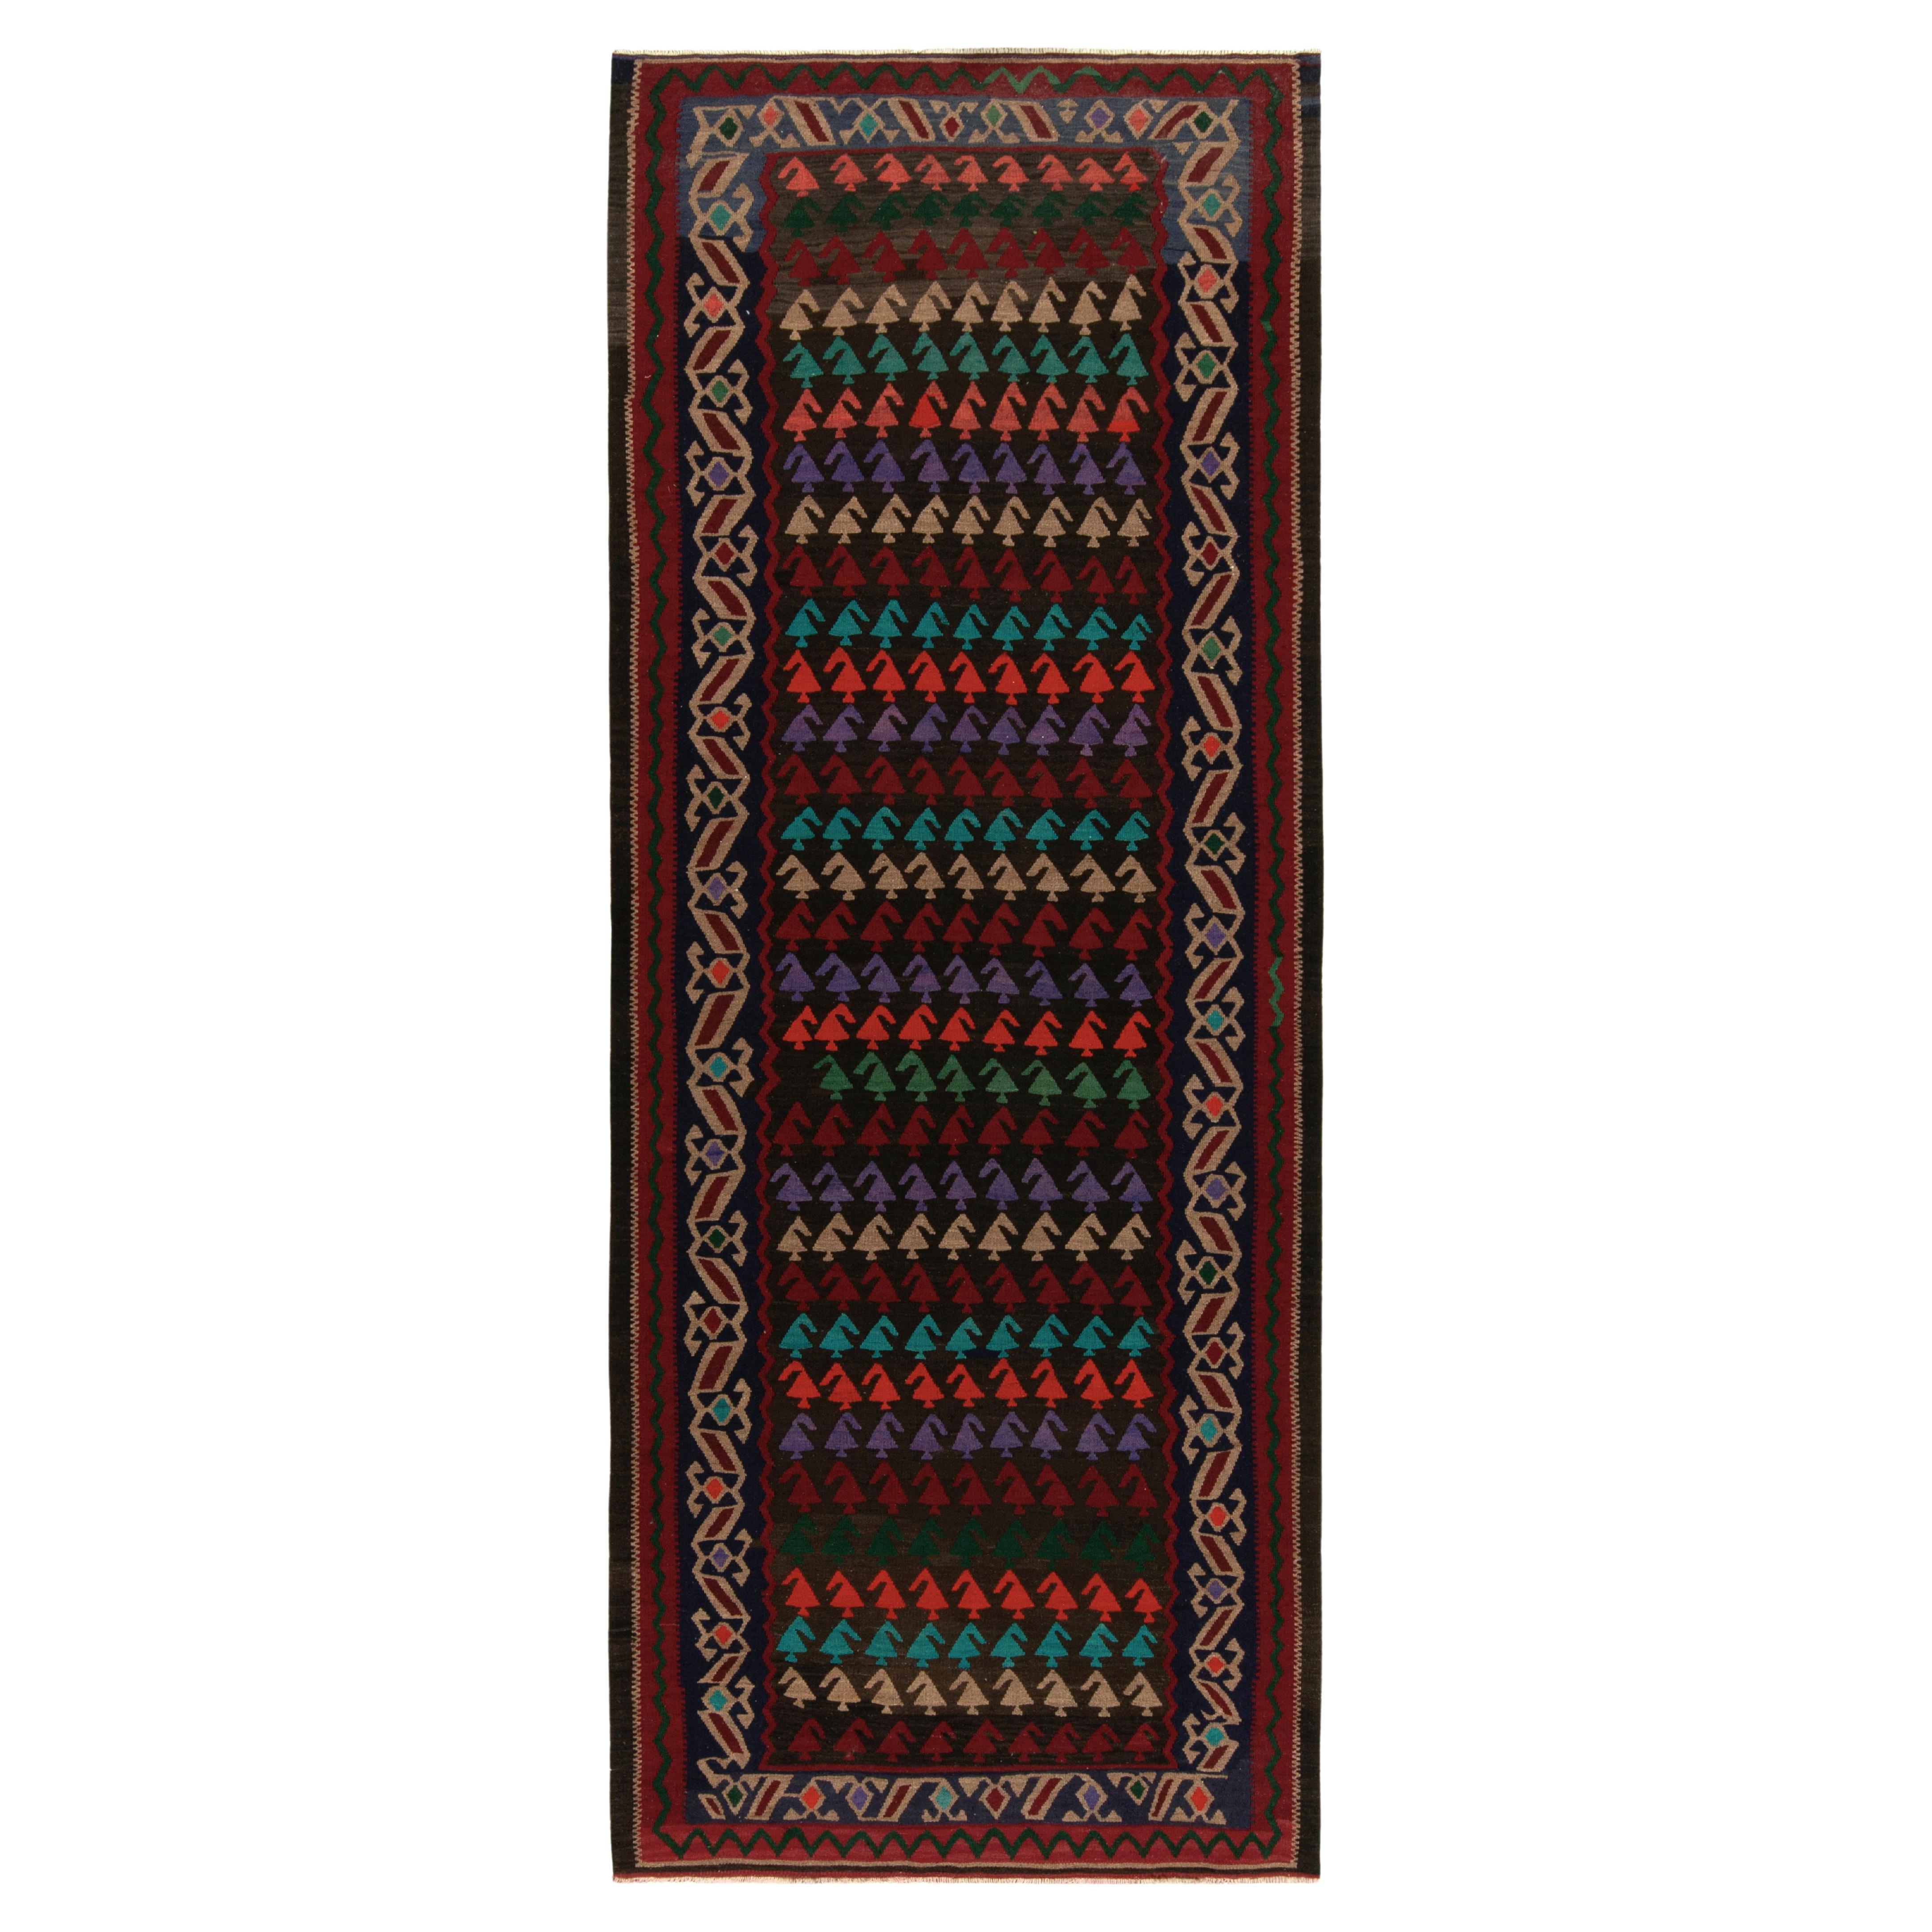 Vintage Turkish Kilim Rug in Red, Beige-Brown & MultiHued Tribal by Rug & Kilim For Sale